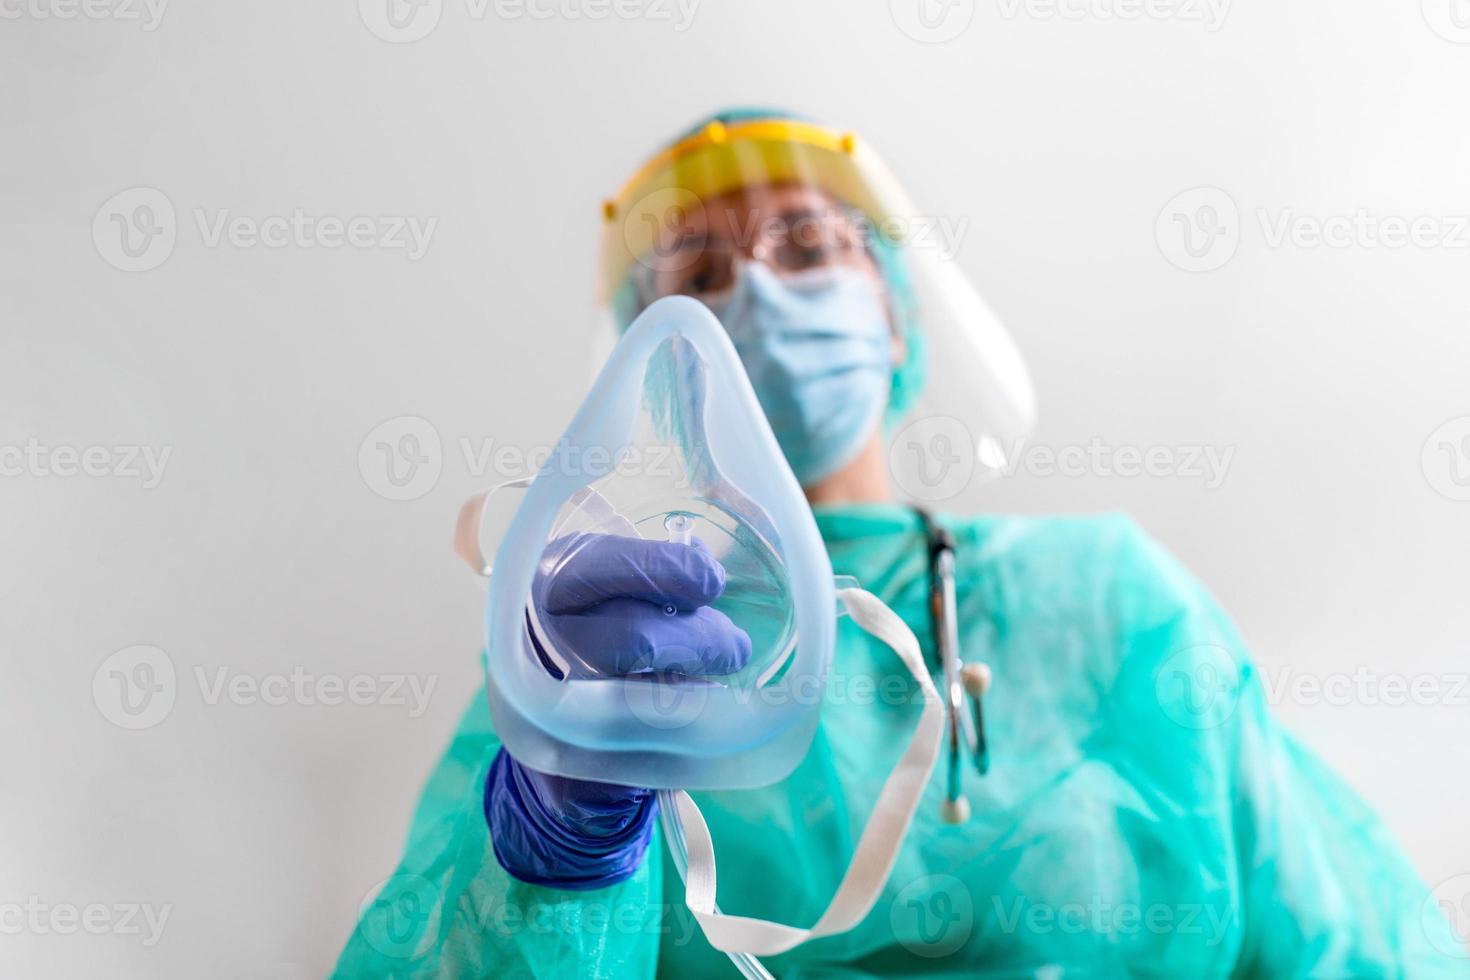 la doctora sostiene una máscara de oxígeno para inhalar pacientes con problemas de respiración, coronavirus o pulmones de ataque covid-19. trabajador de la salud en equipo de protección puesto en máscara de oxígeno paciente diagnóstico de coronavirus foto